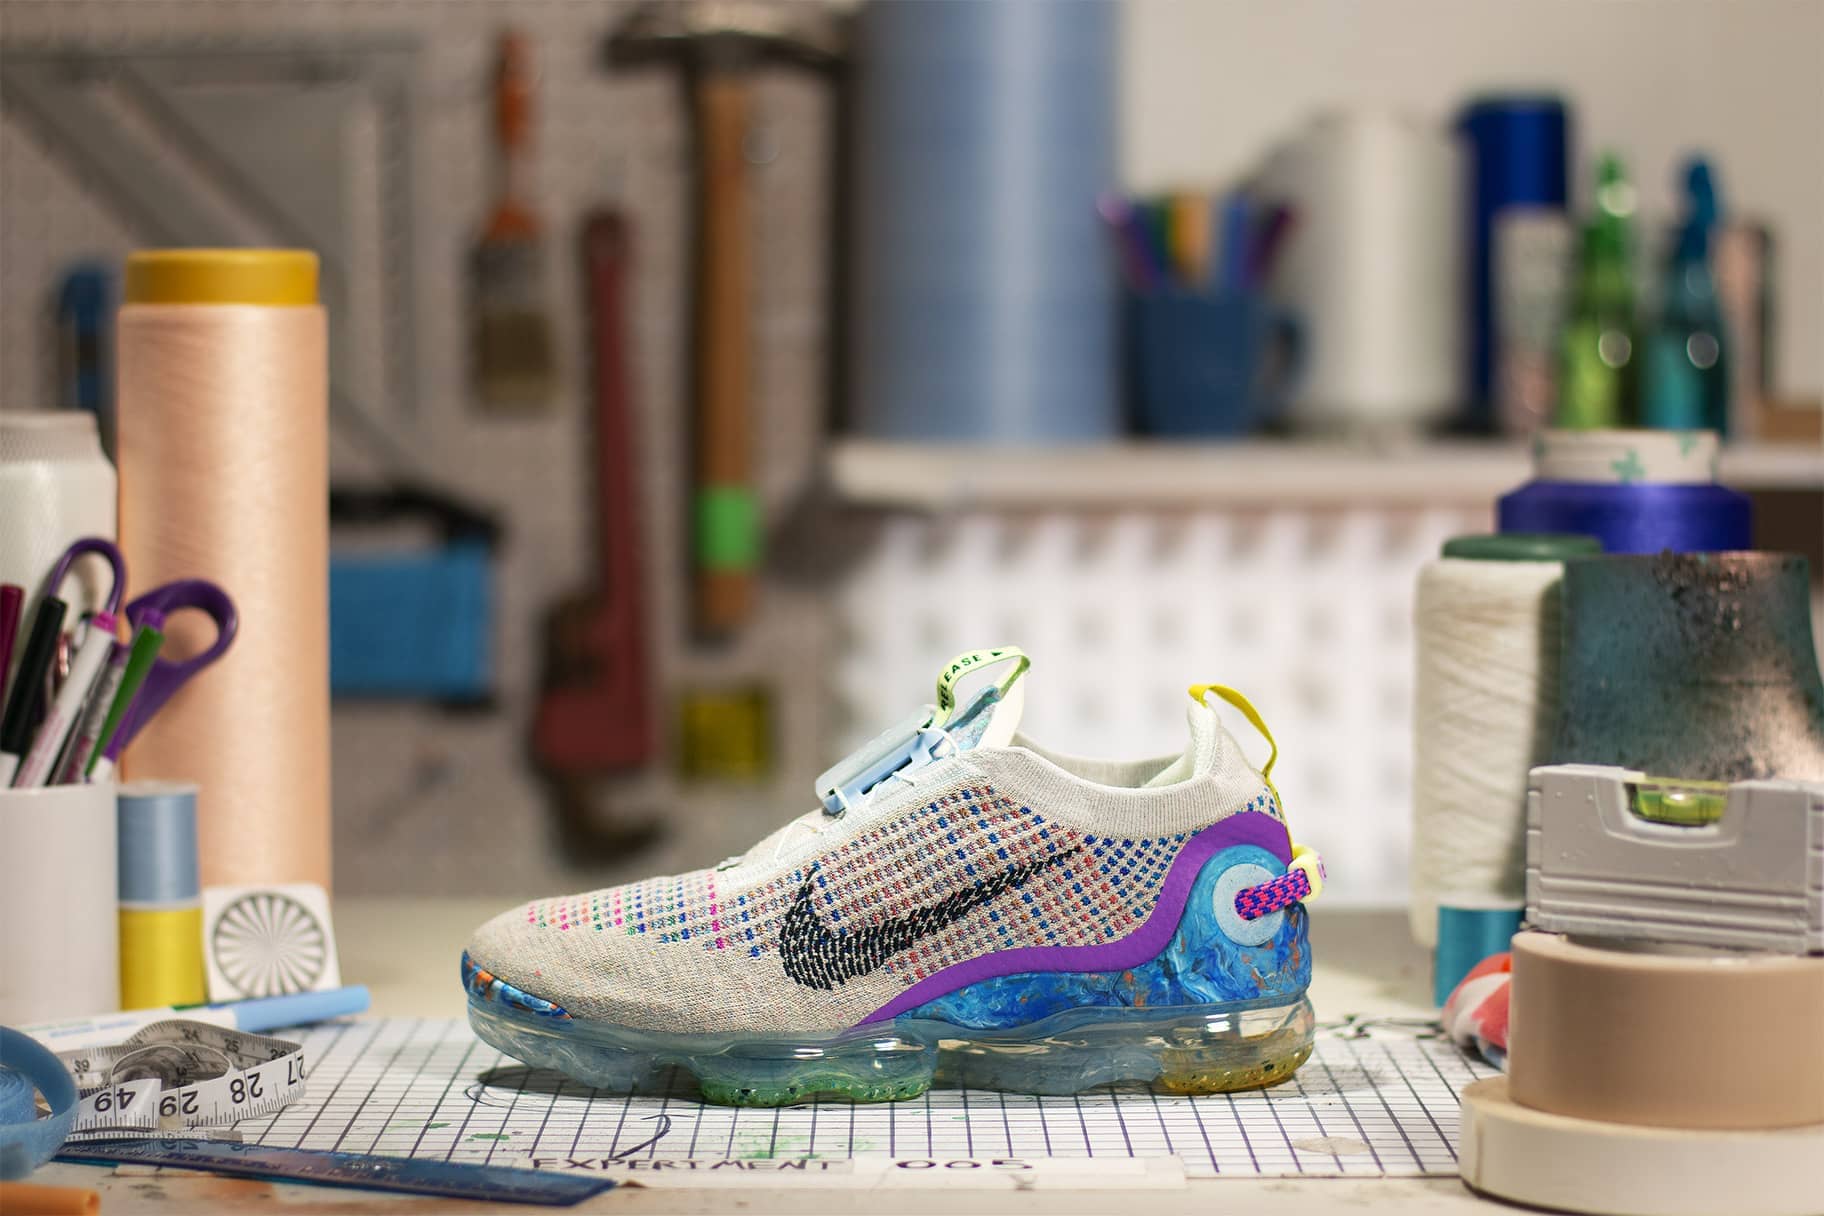 Achtervoegsel George Eliot Concentratie Nike's beste ventilerende schoenen voor zweterige voeten. Nike NL